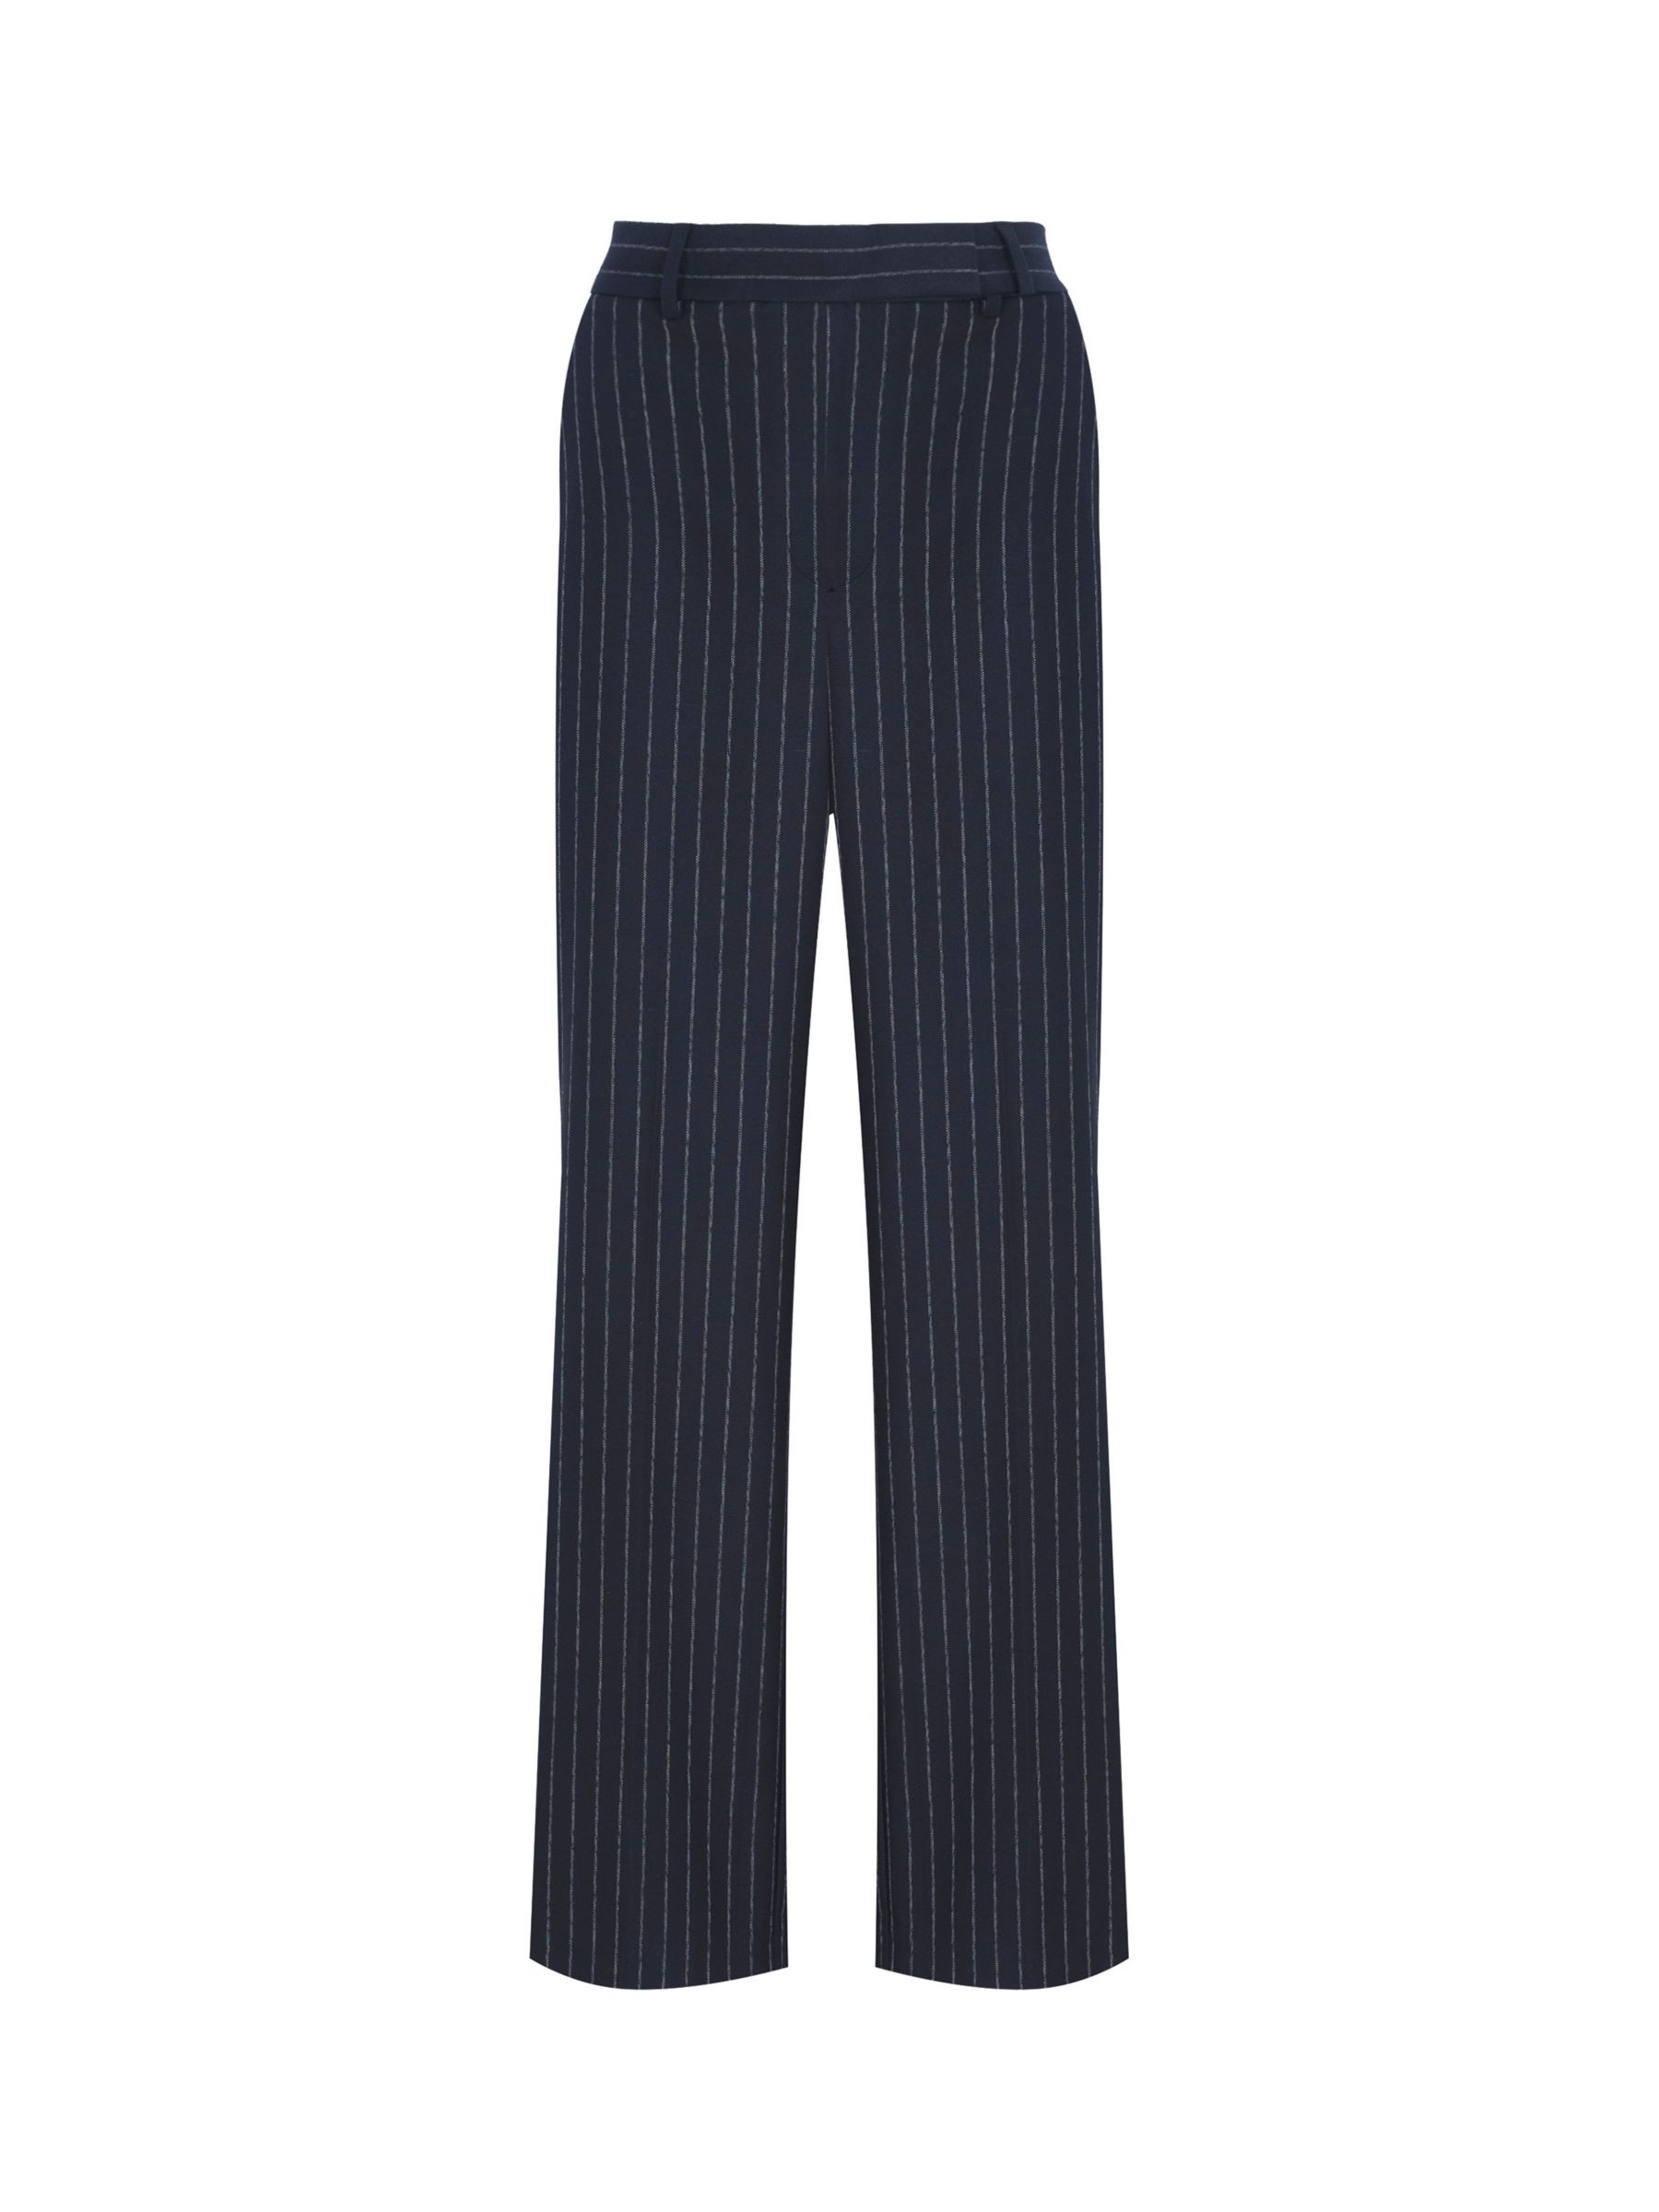 Thea velvet side stripe trouser in Navy/Peacock Blue